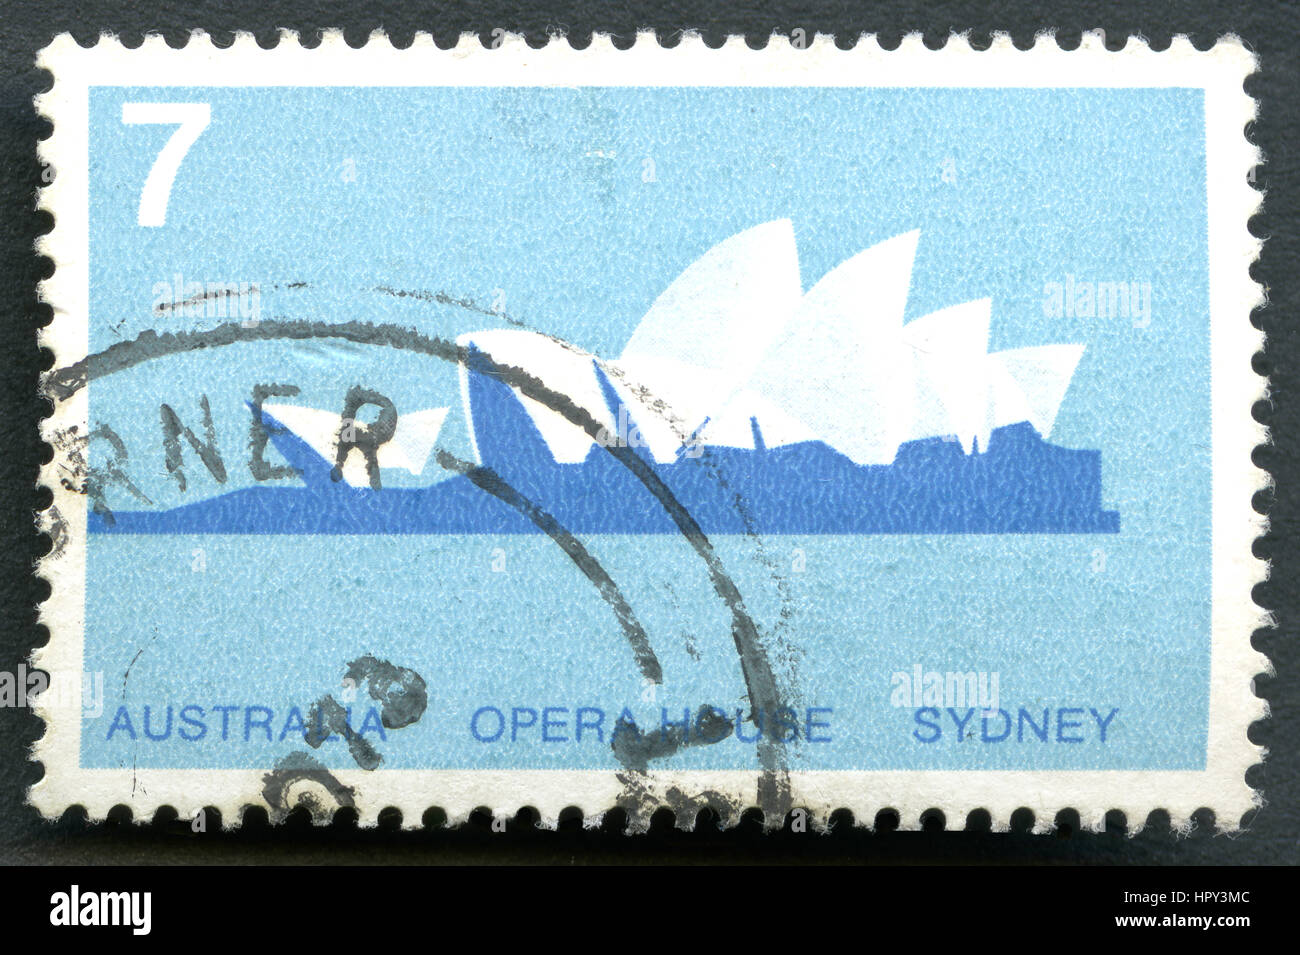 AUSTRALIA - circa 1973: utilizzate un francobollo da Australia, raffigurante una illustrazione della Opera House di Sydney in Australia, circa 1973. Foto Stock